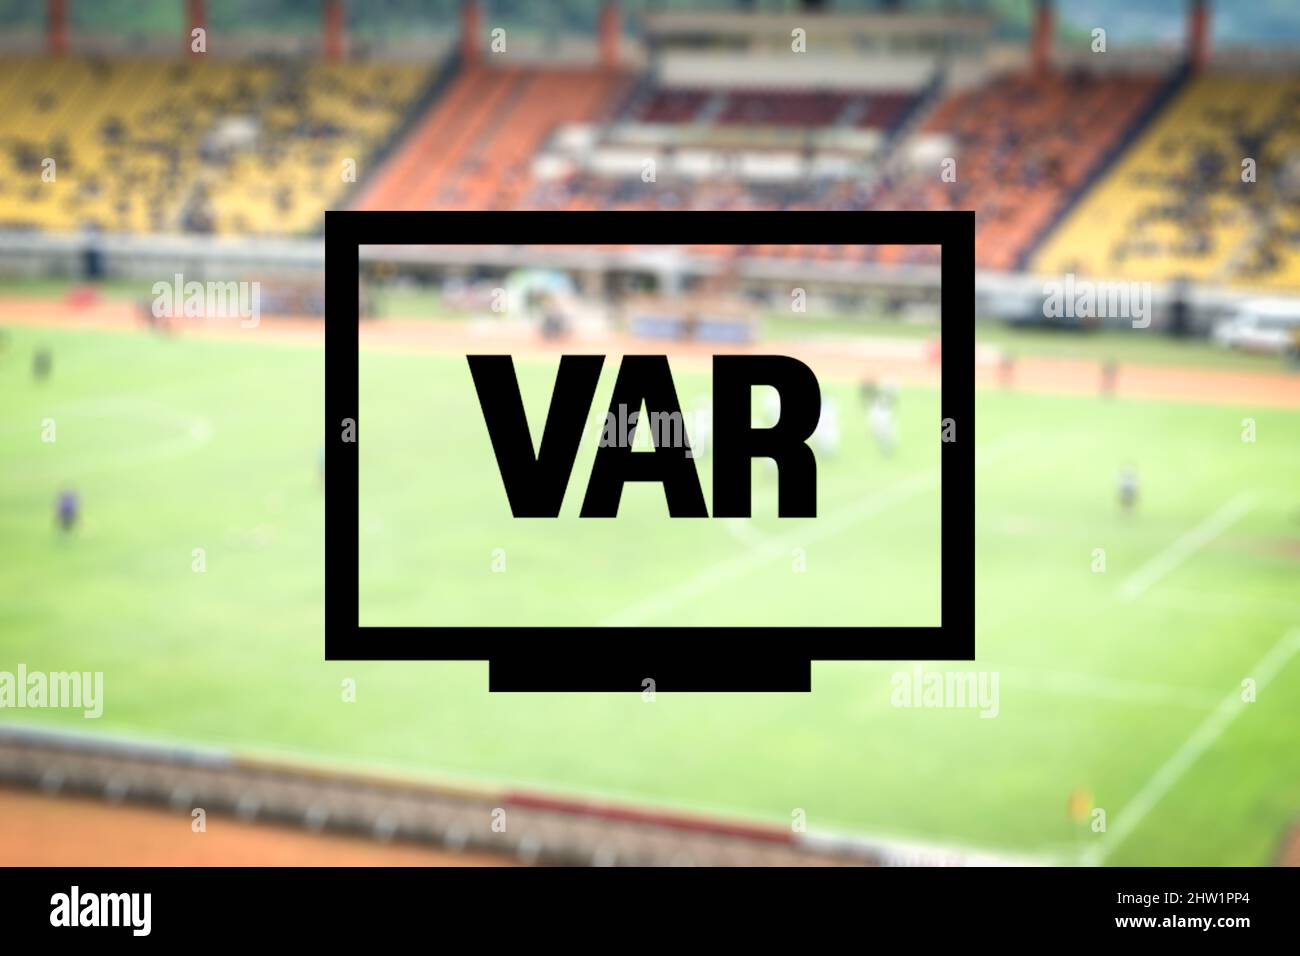 VAR-Grafik im Fußball, Video Assistant Referee illustrative Grafik für Fußball oder Fußballspiel, Live-Score, Sport auf dem Bildschirm oder im Fernsehen Stockfotografie